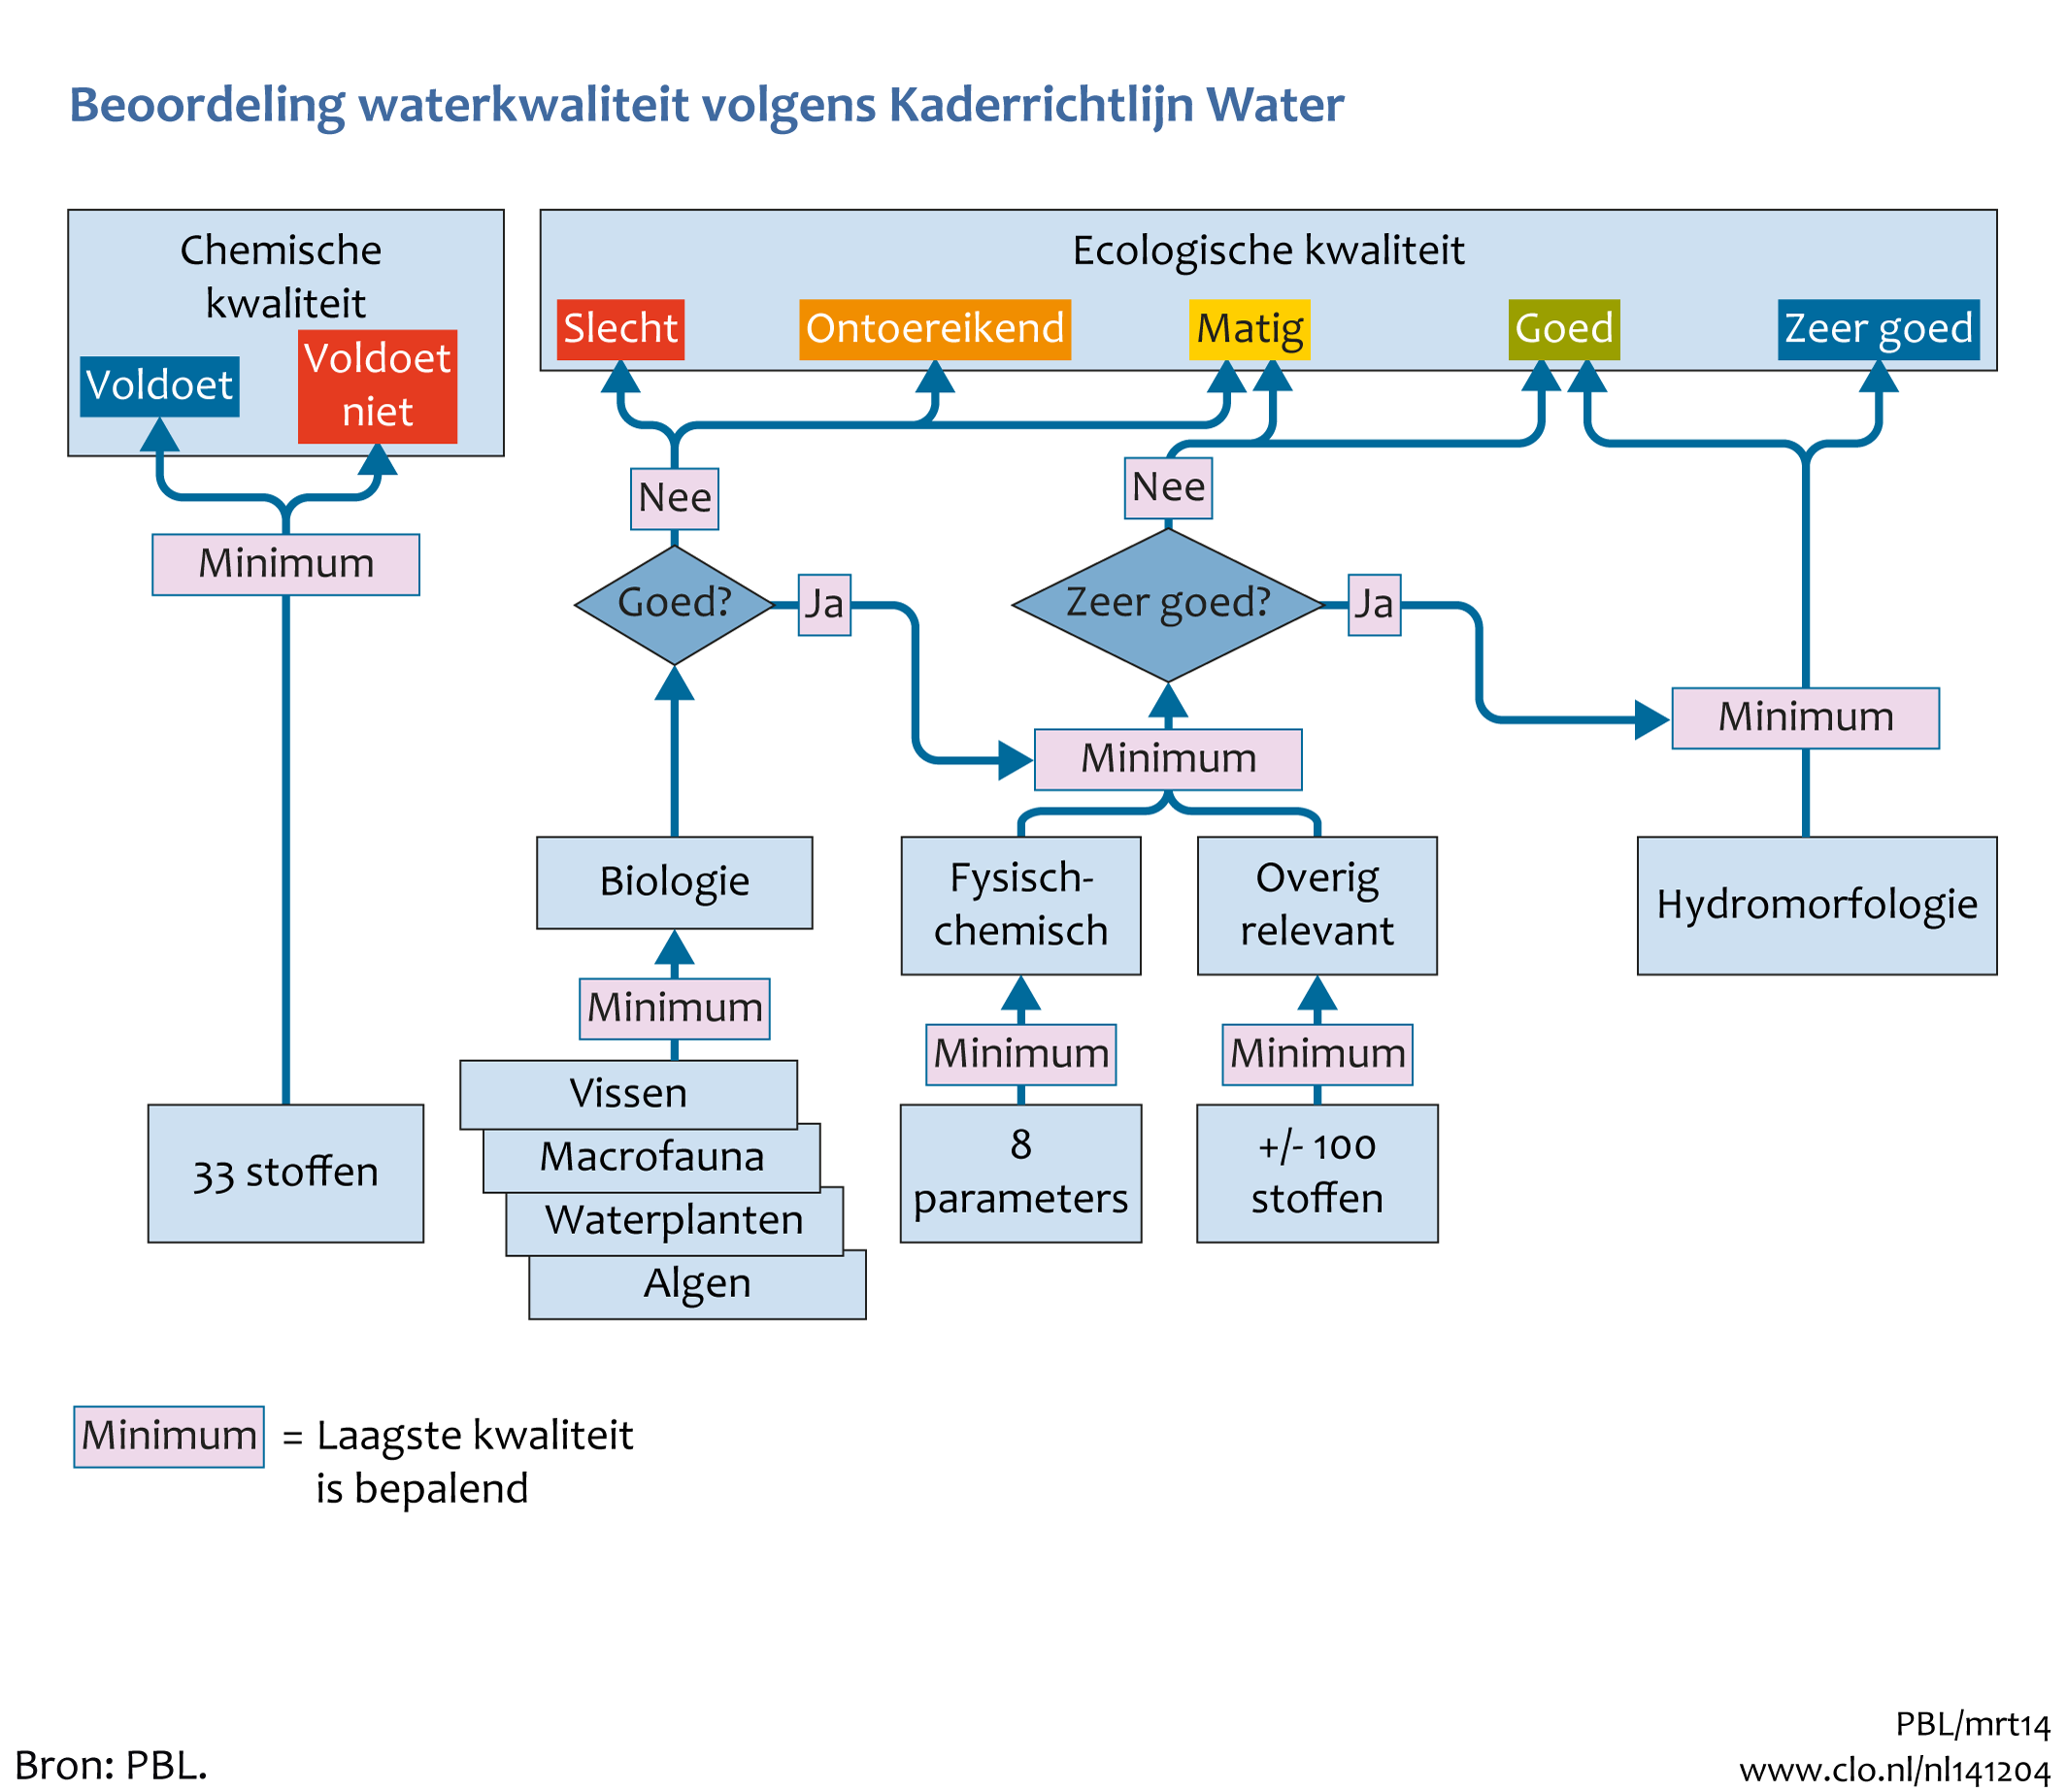 Figuur Schema beoordeling waterkwaliteit in de KRW. In de rest van de tekst wordt deze figuur uitgebreider uitgelegd.